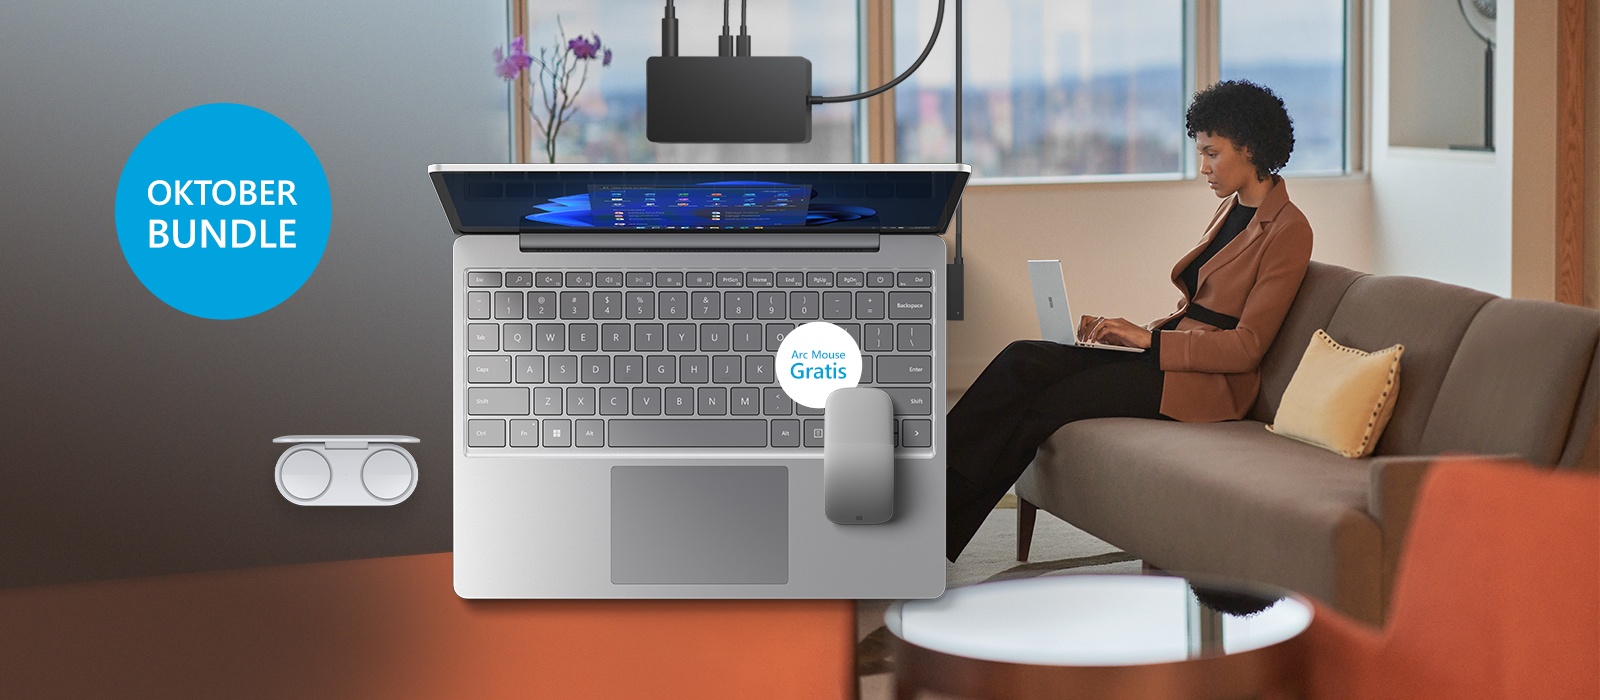 Surface Laptop Go 2 inklusive Surface Earbuds, Suface Dock 2 und Surface Arc Mouse sind vor einem Farbigen Hintergrund platziert auf welchem eine Frau den Surface Laptop Go 2 nutzt.